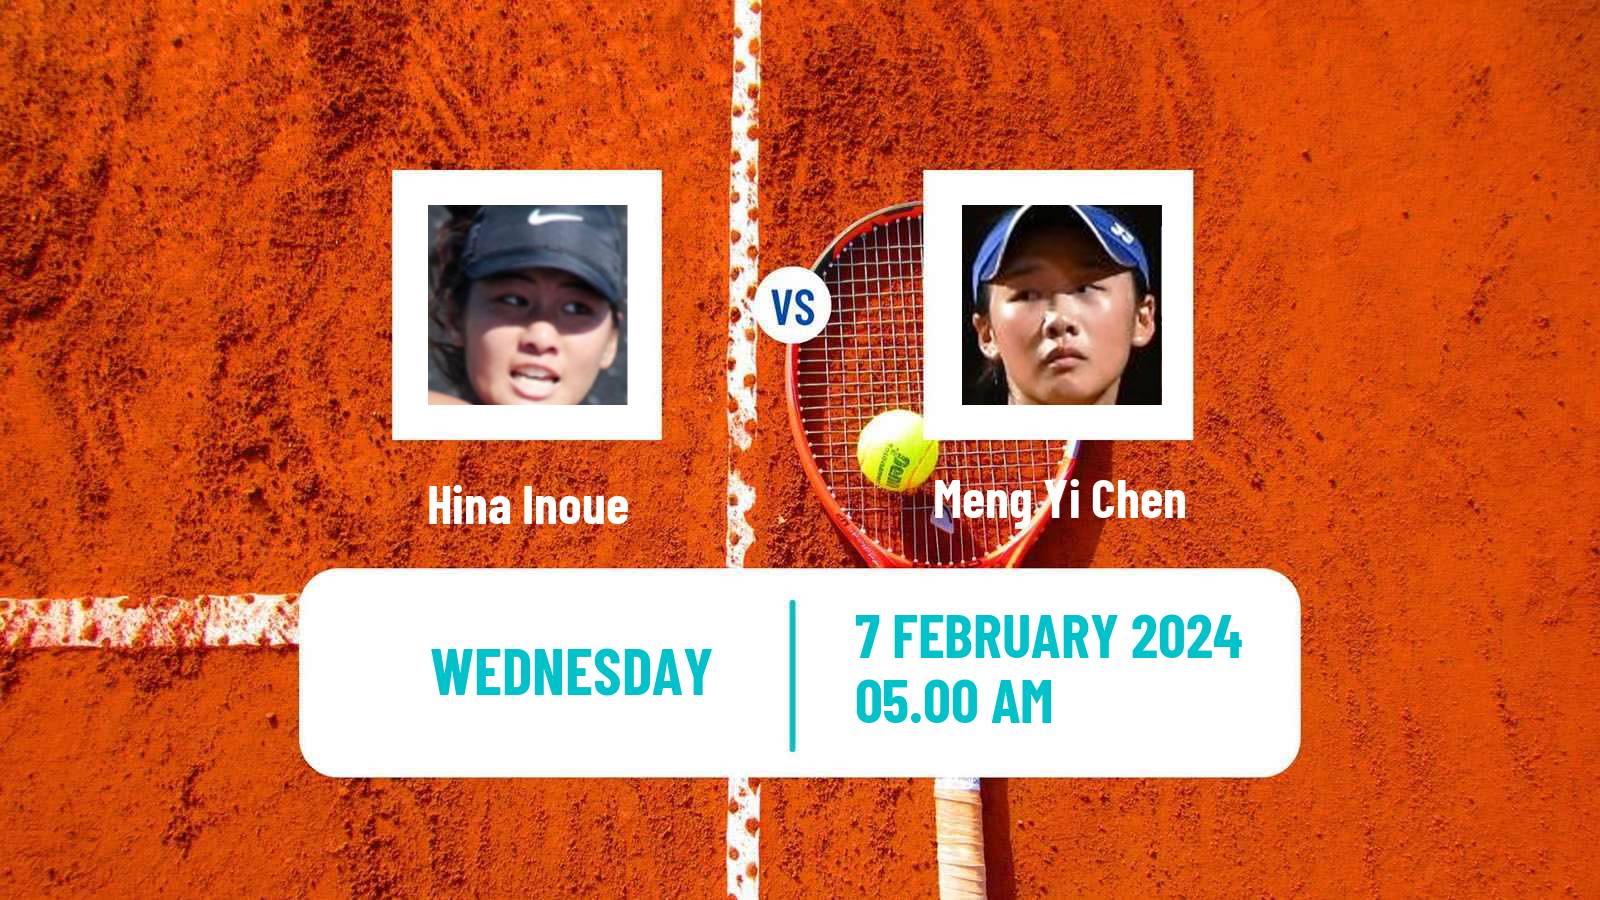 Tennis ITF W15 Monastir 4 Women Hina Inoue - Meng Yi Chen